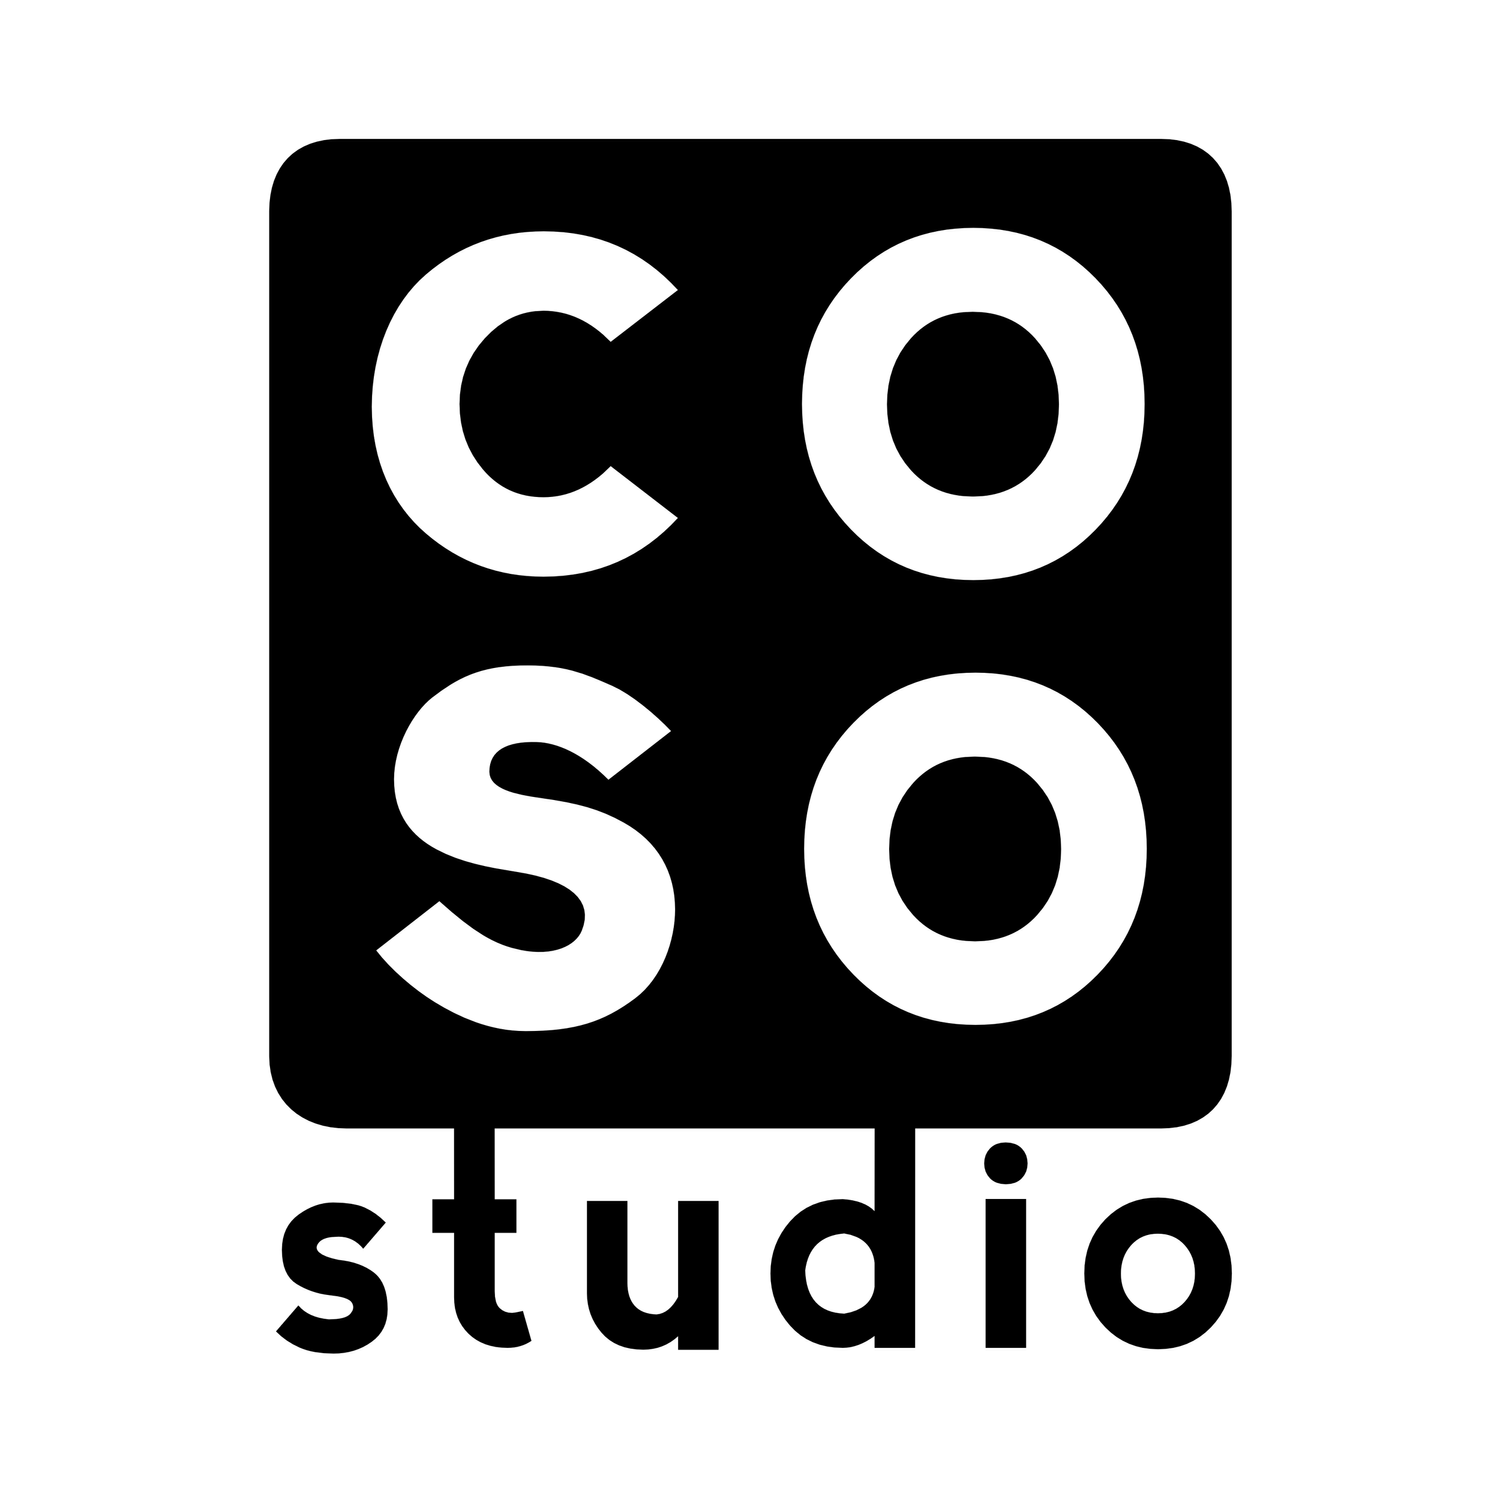 Coso Studio